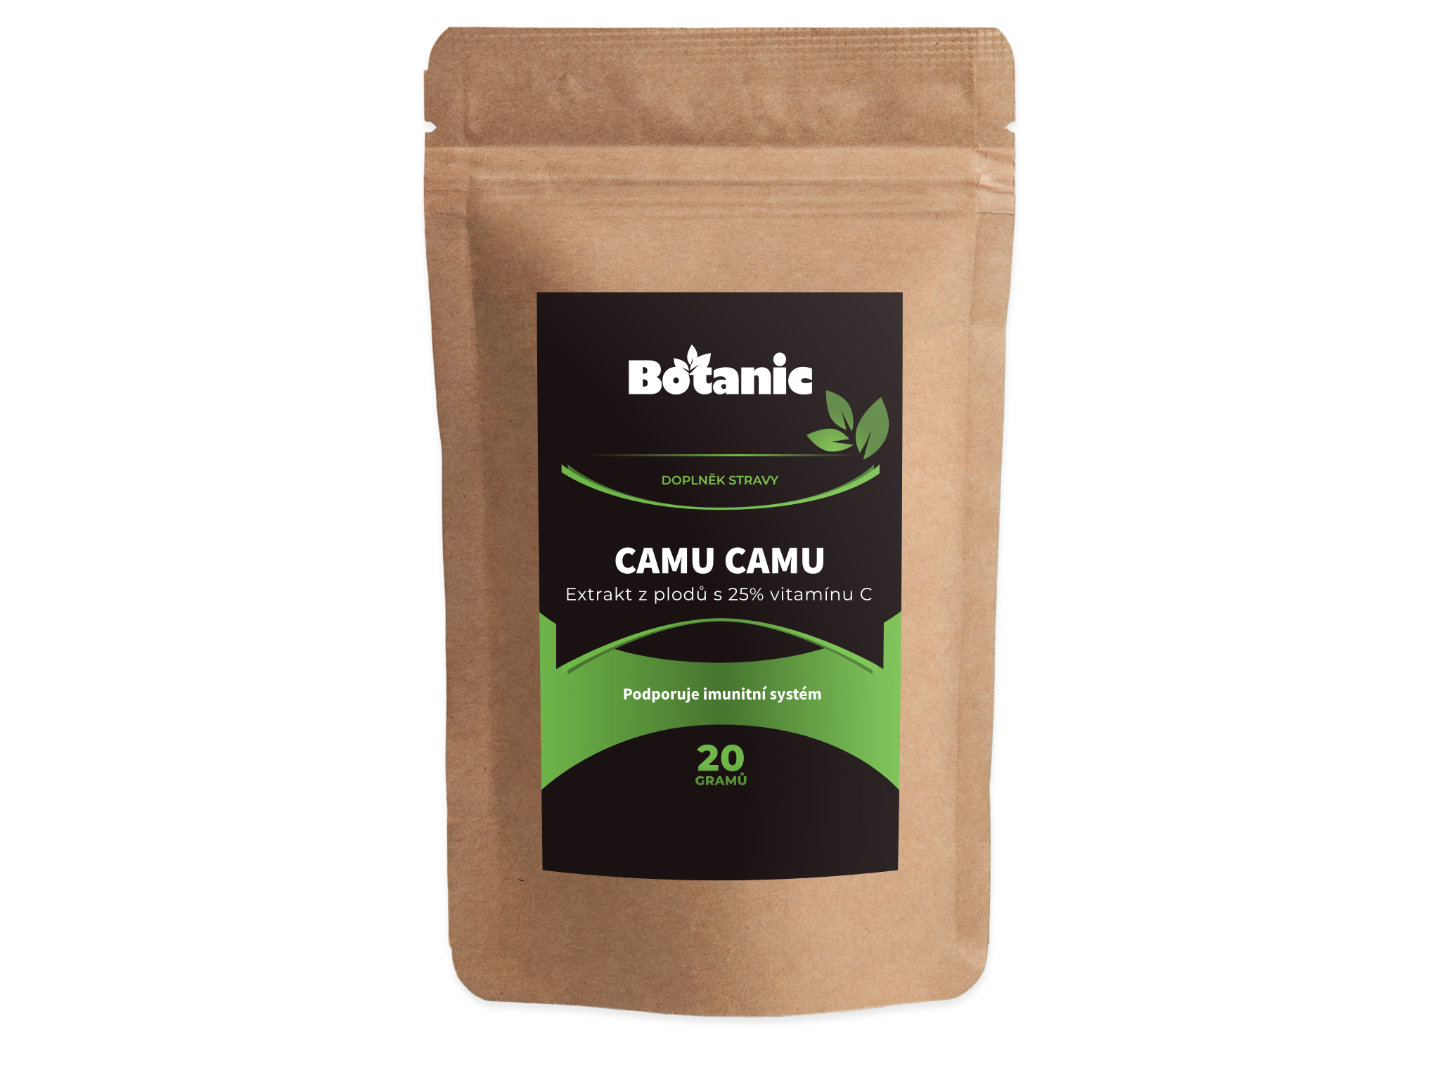 Botanic Camu Camu - Extrakt z plodů s 25% vitamínu C v prášku 20g